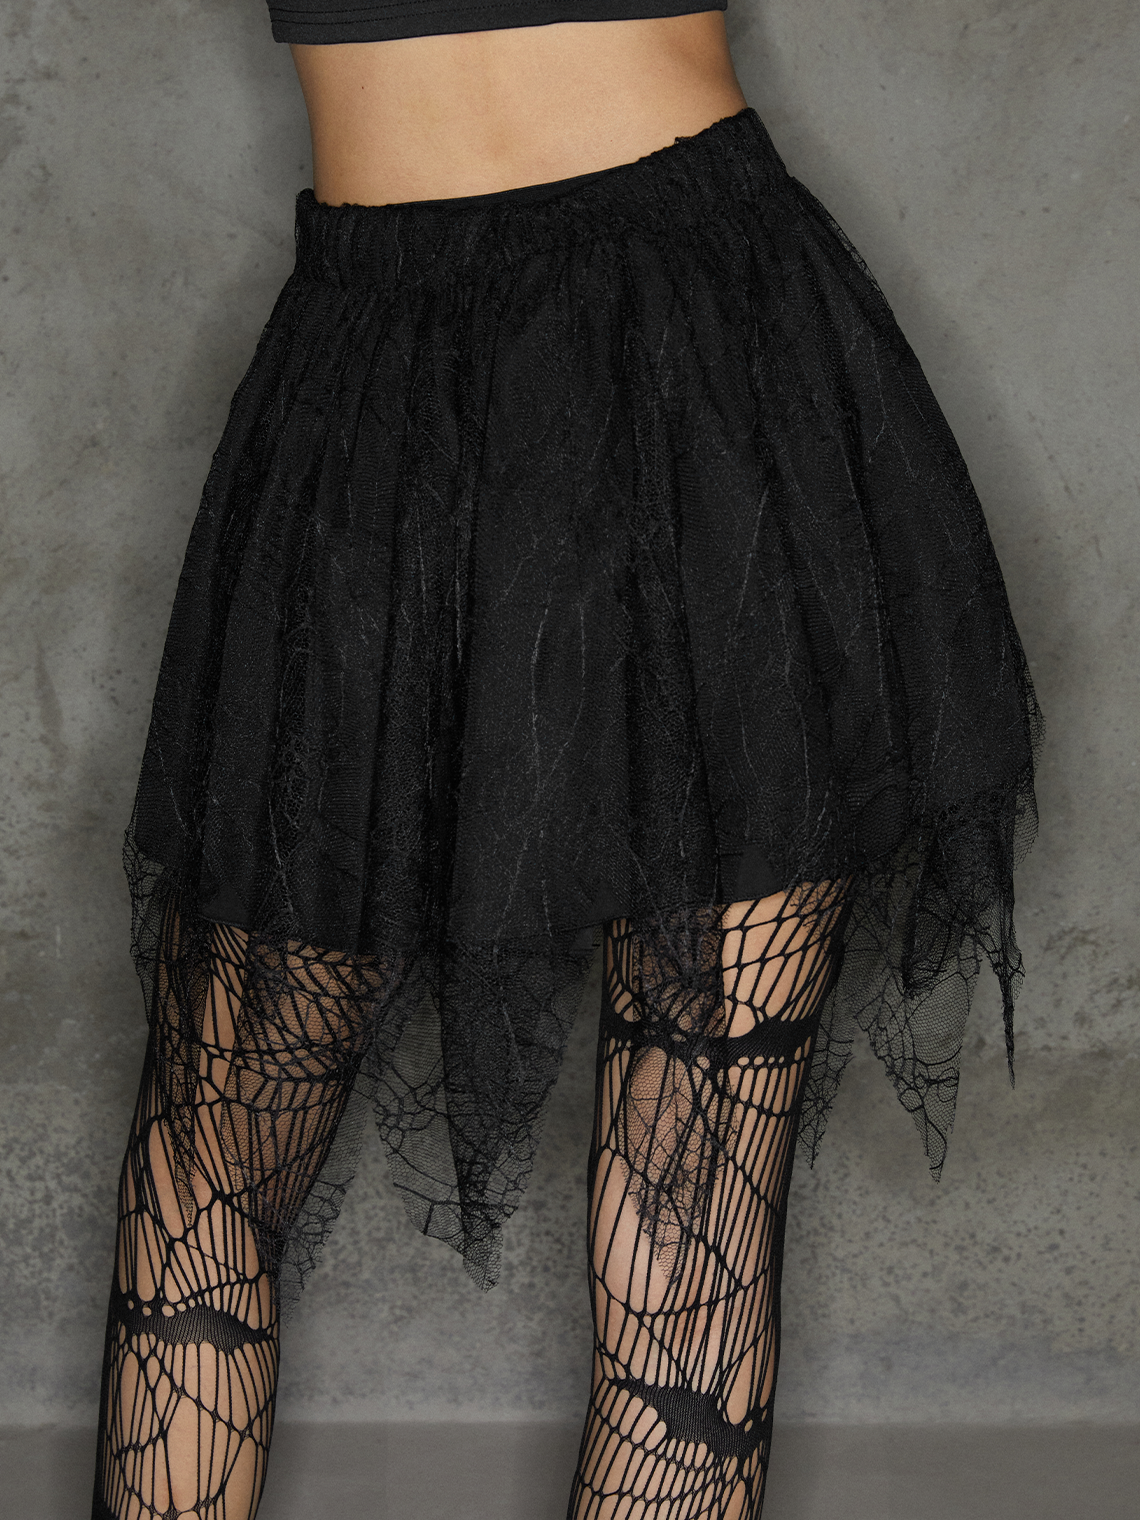 【Final Sale】Punk Black Double Layer Irregular Hem Halloween Bottom Skirt